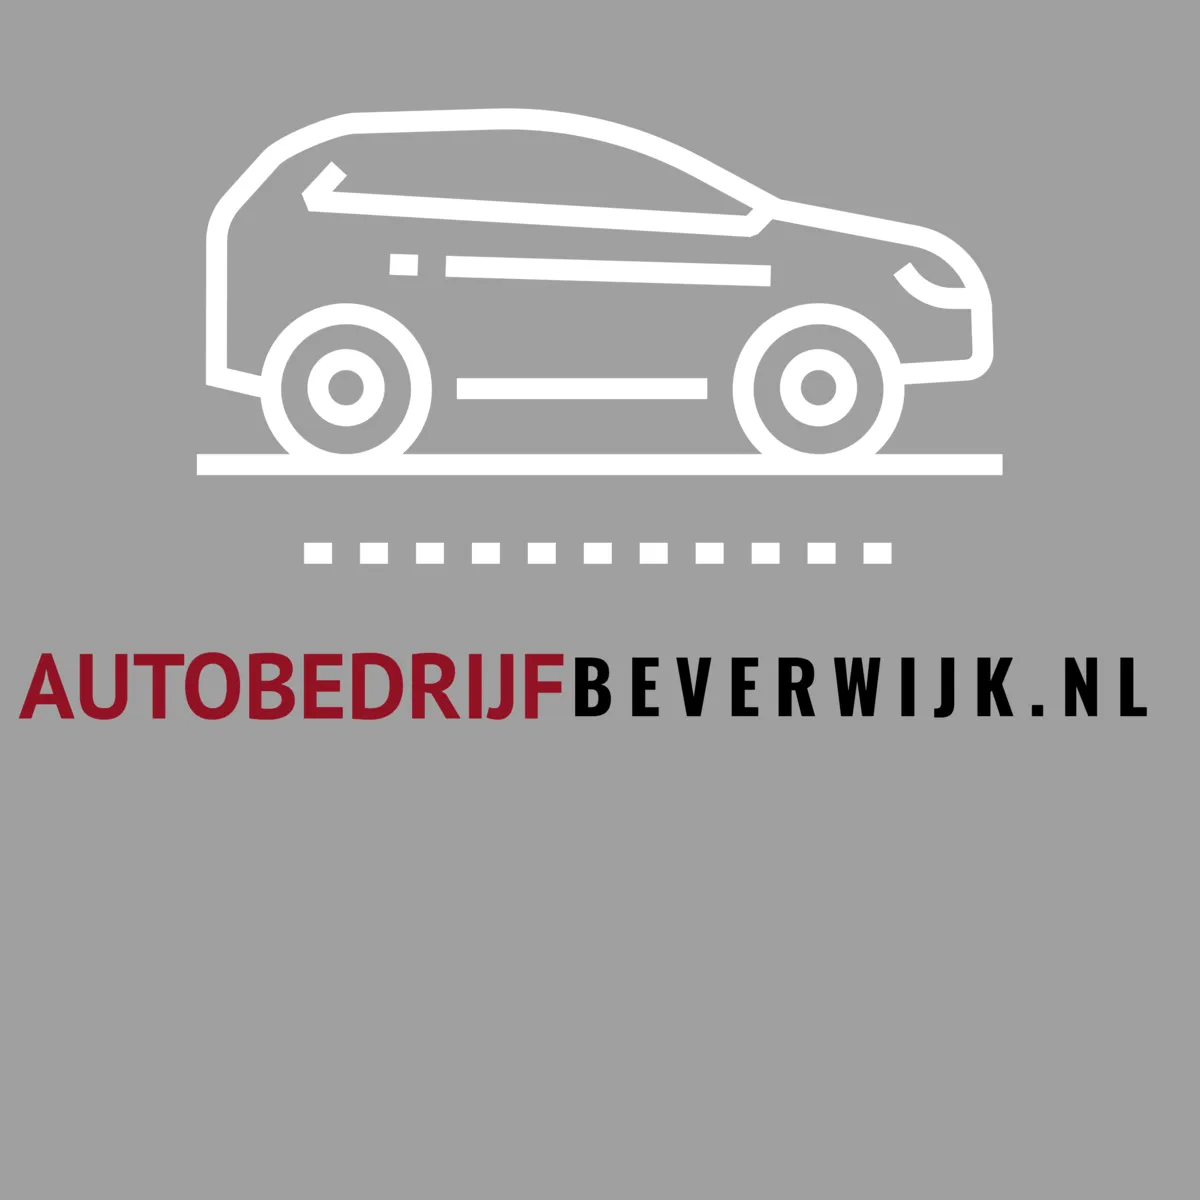 AutobedrijfBeverwijk.nl